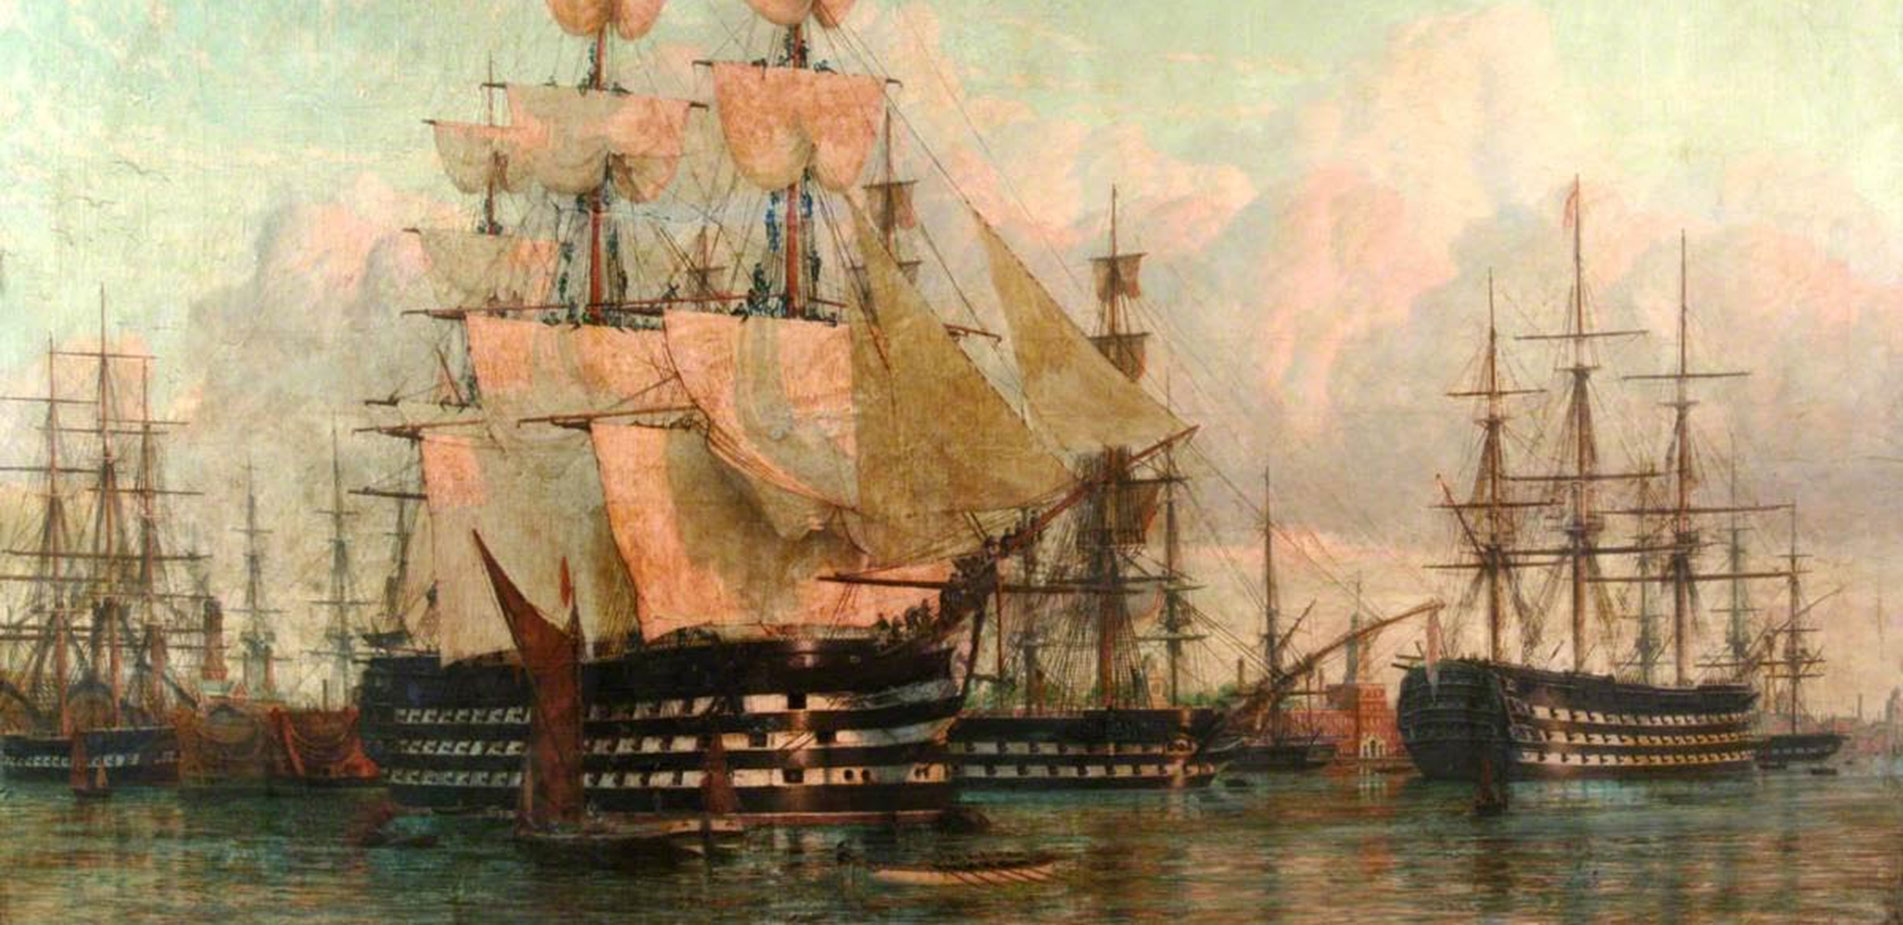 Η απίστευτη ιστορία του βρετανικού ναυτικού αποκλεισμού της Ελλάδας το μακρινό 1847 με αφορμή το… κάψιμο του Ιούδα το Πάσχα